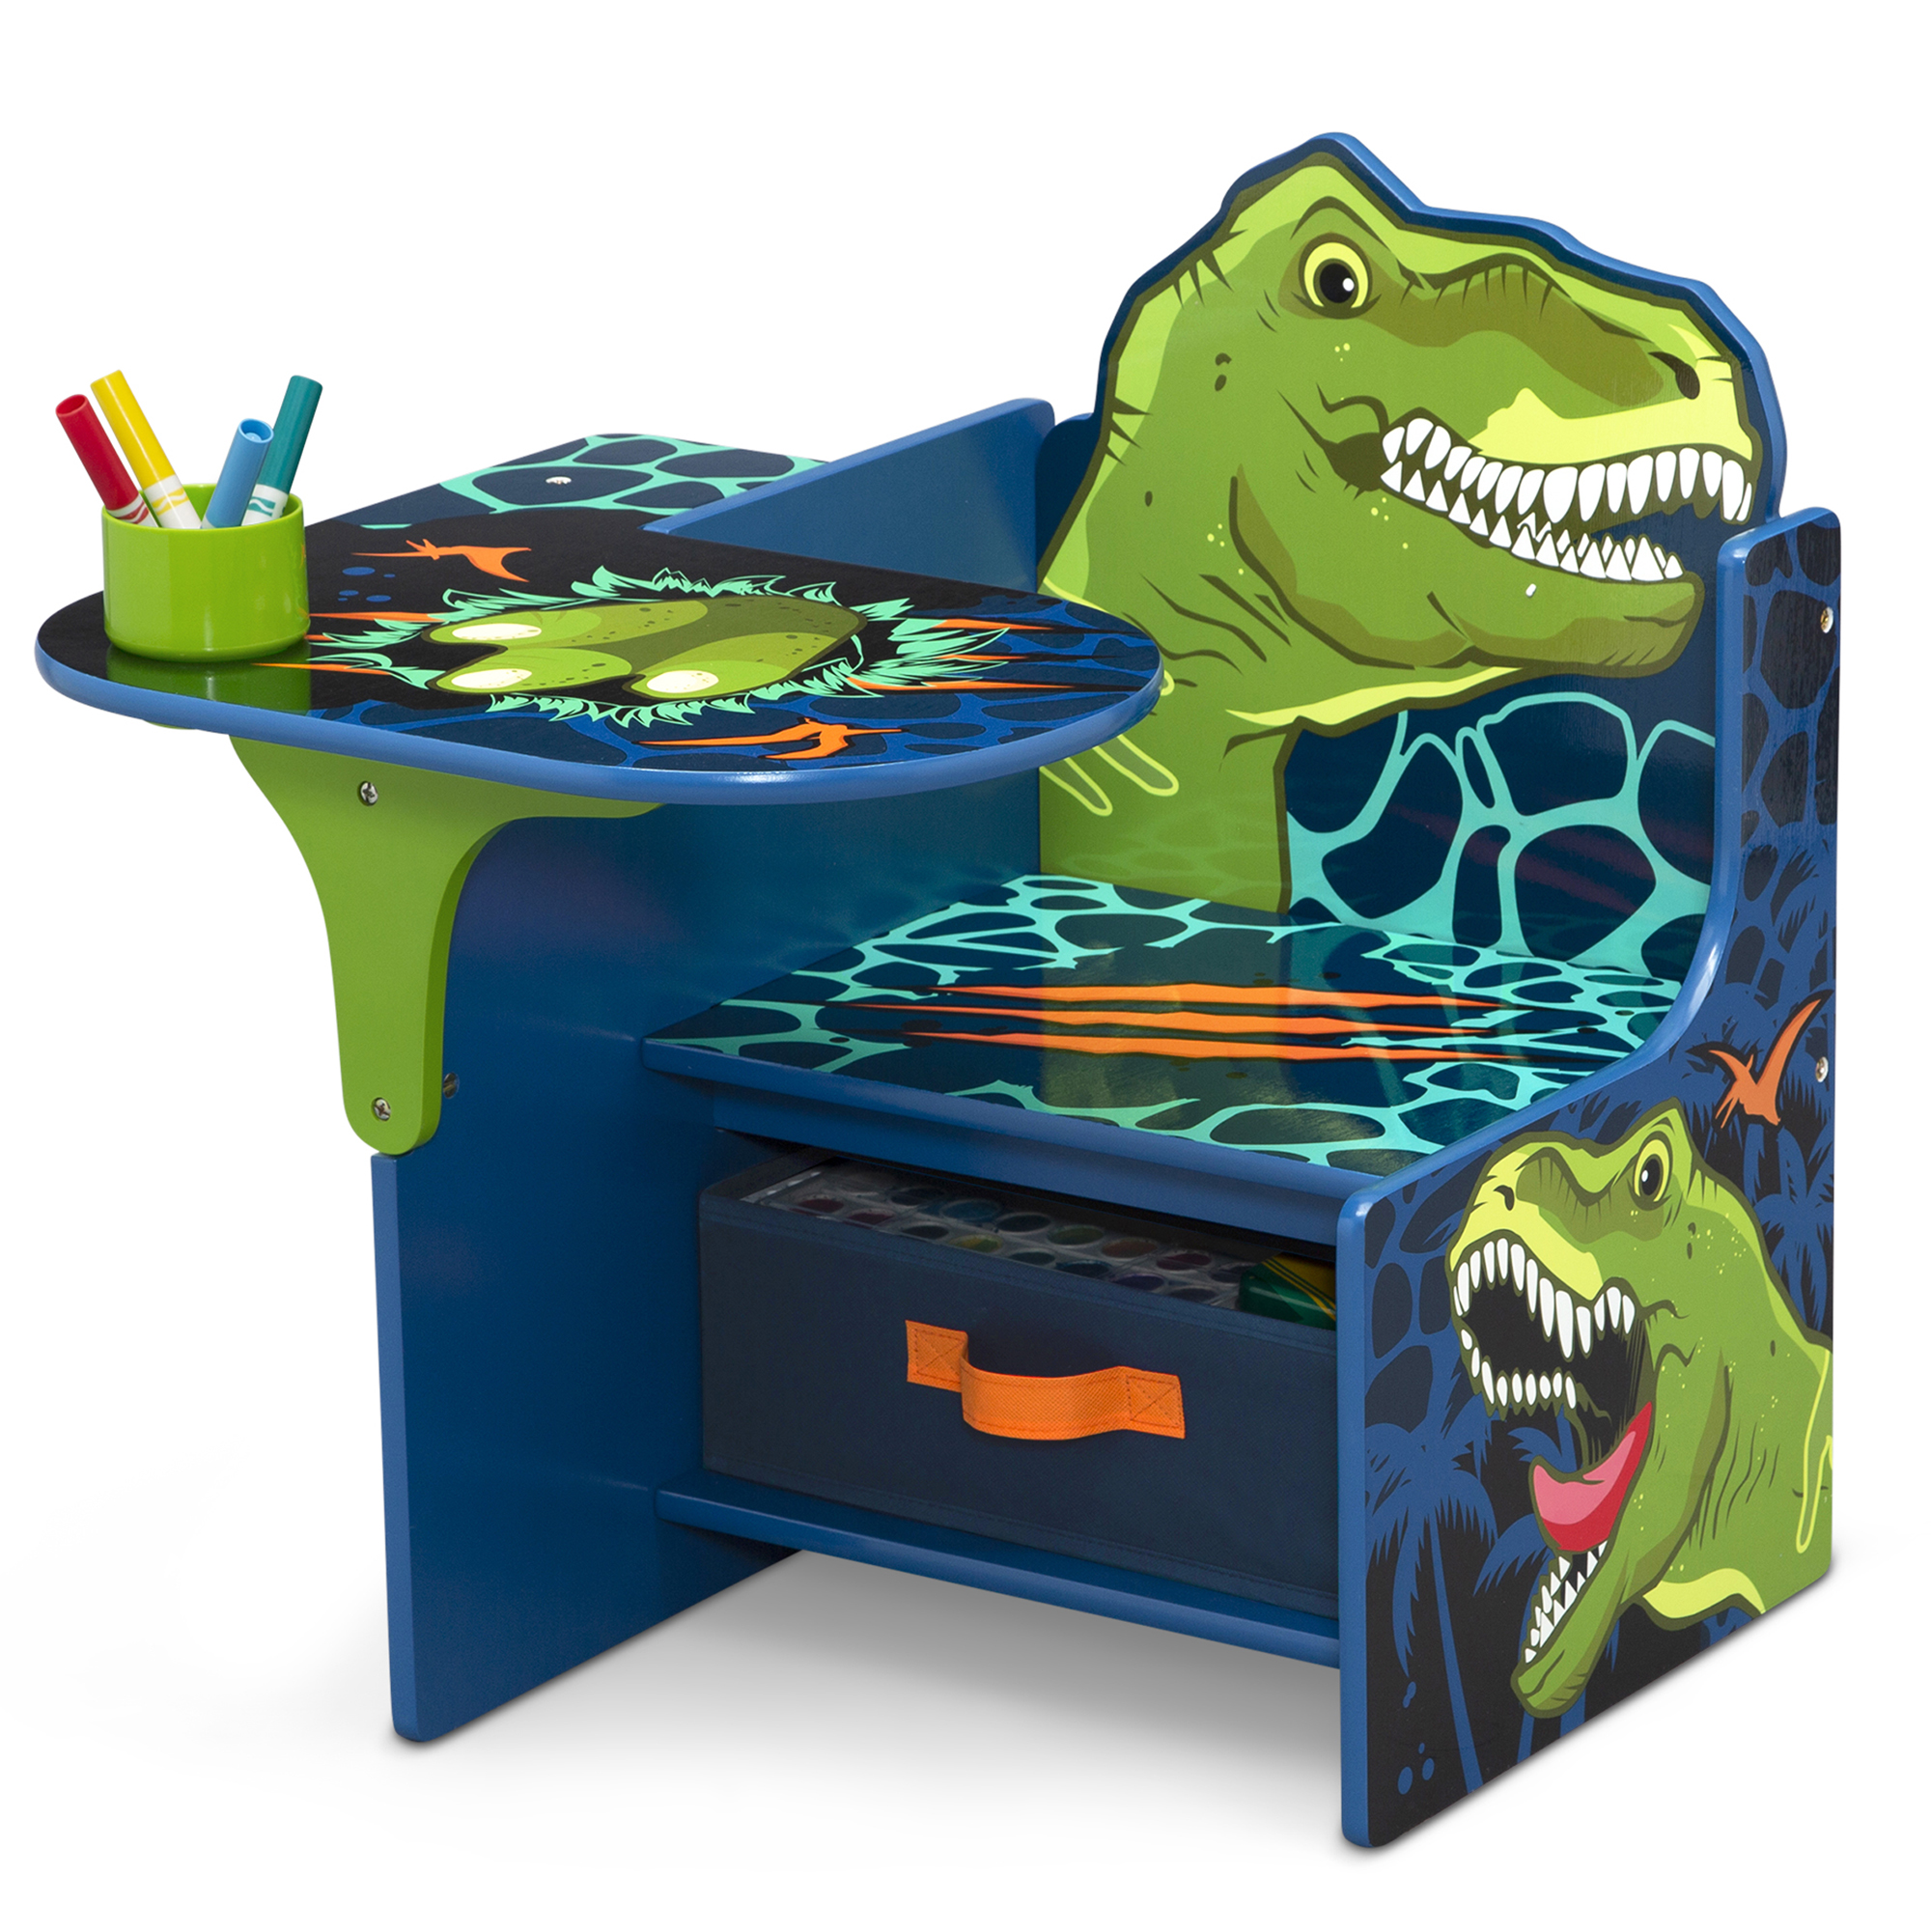 Delta Children Dinosaur Chair Desk with Storage Bin - Greenguard Gold Certified - image 1 of 8